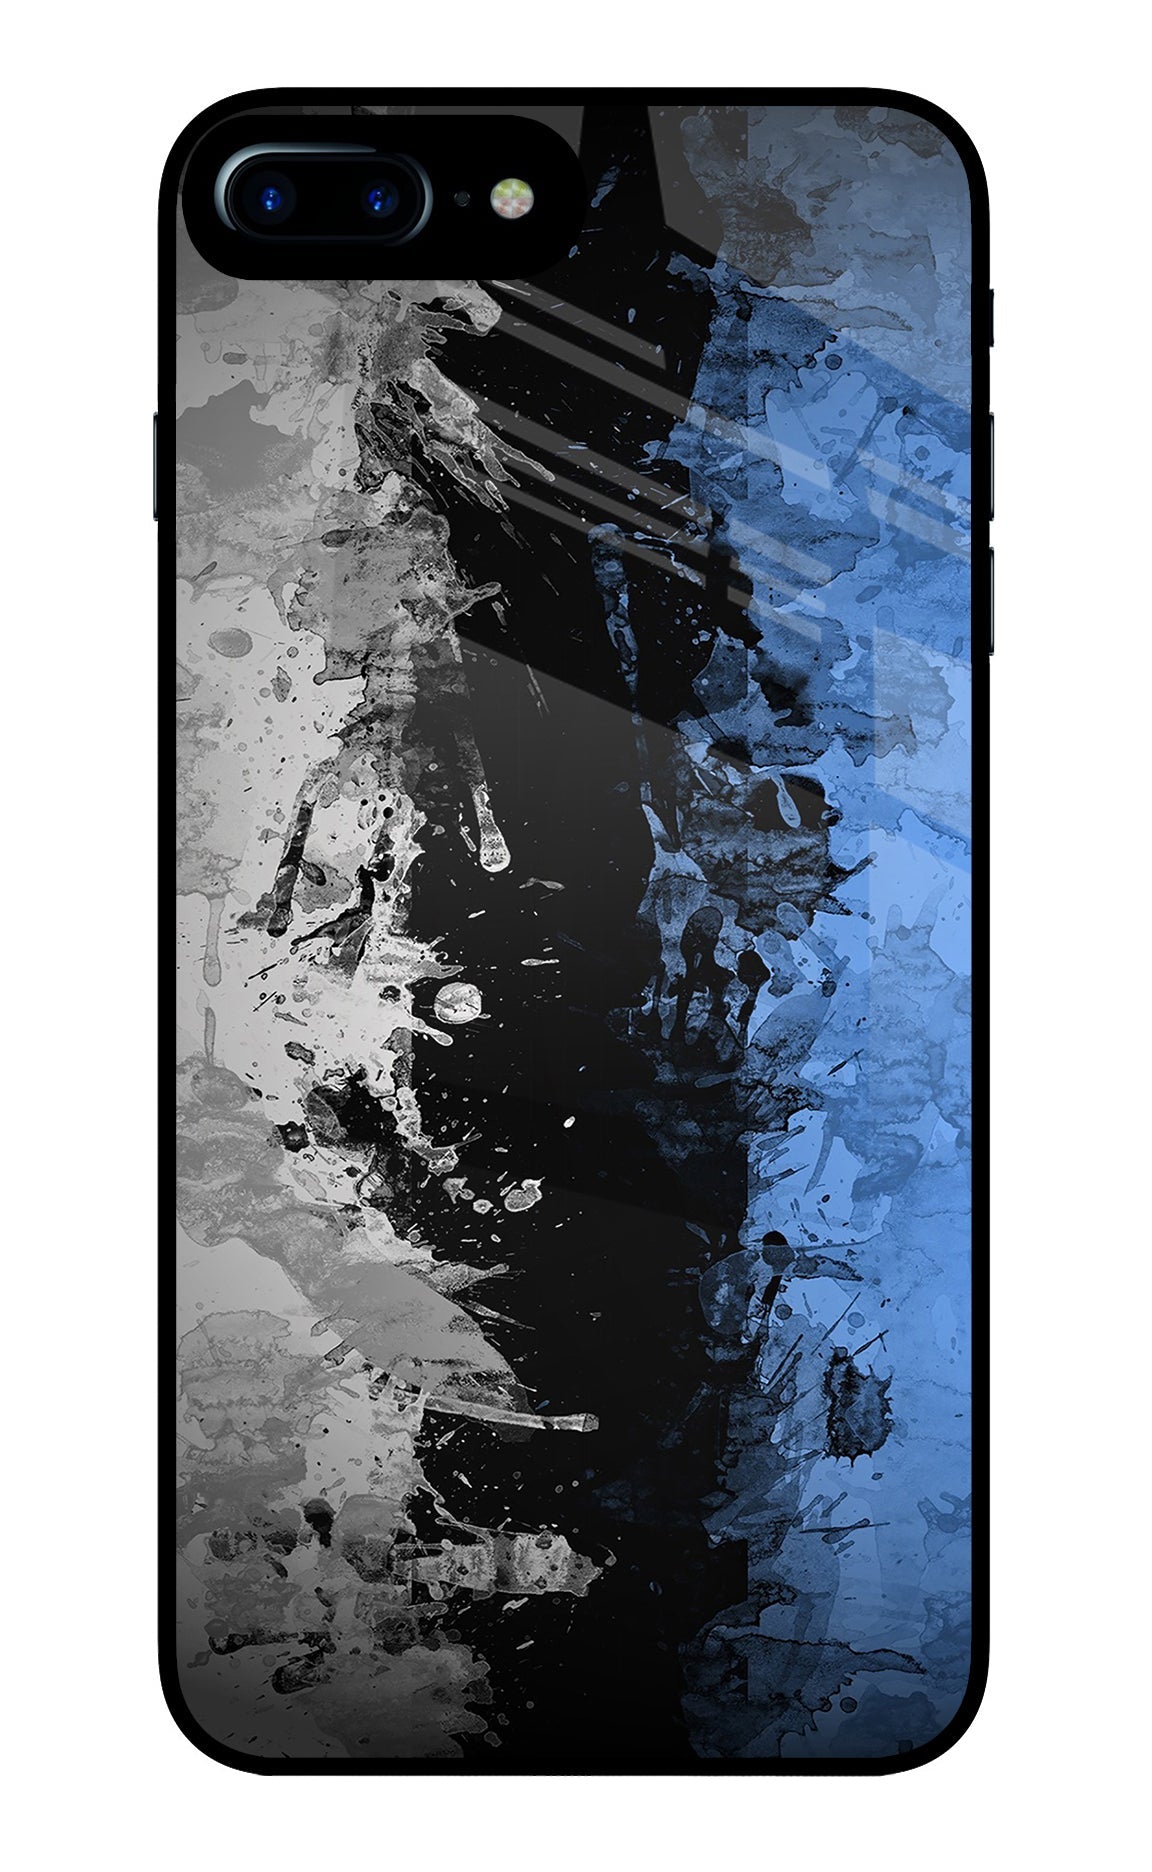 Artistic Design iPhone 7 Plus Glass Case